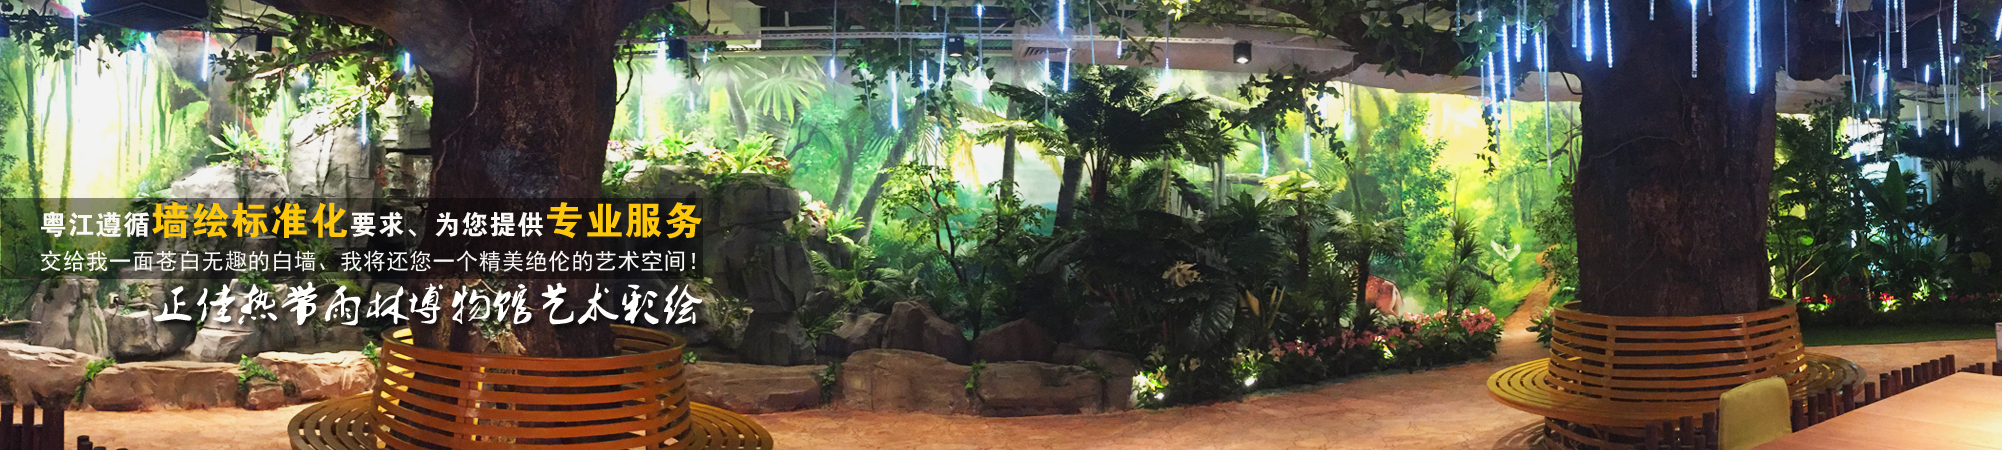 热带雨林博物馆森林主题